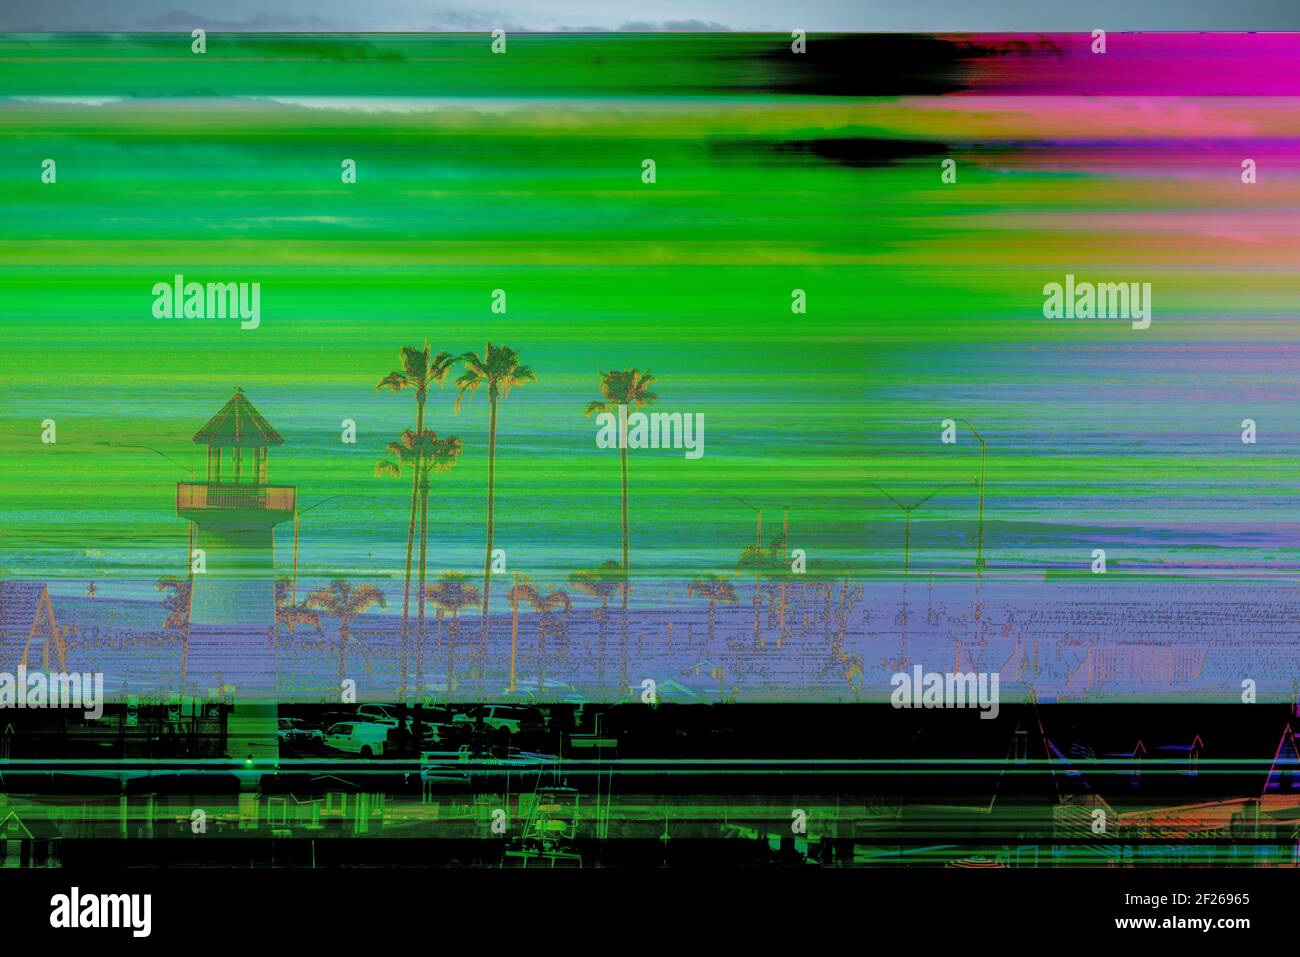 La imagen digital corrupta muestra una línea horizontal, una imagen descolorida con varios colores. Foto de stock